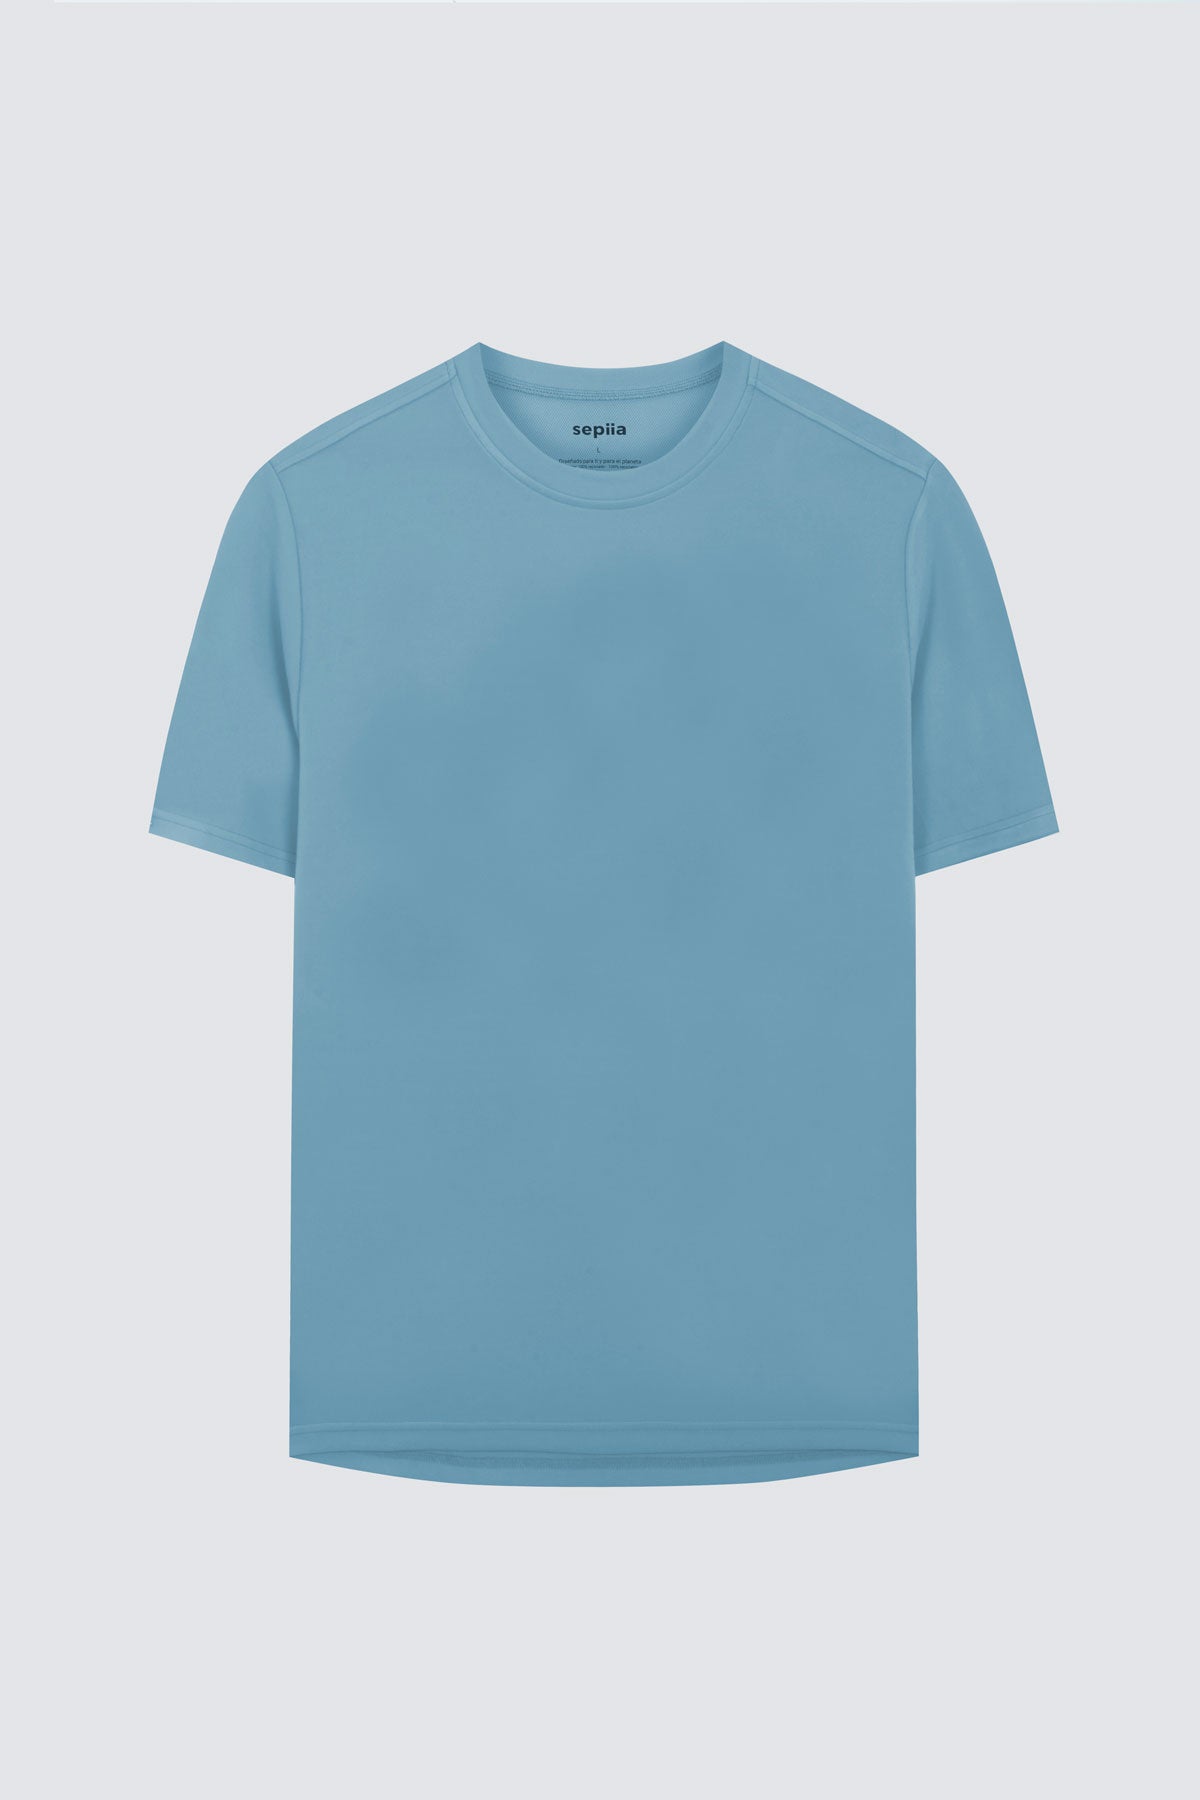 Camiseta de hombre en azul medianoche de Sepiia, estilo y comodidad en una prenda duradera. Foto prenda en plano